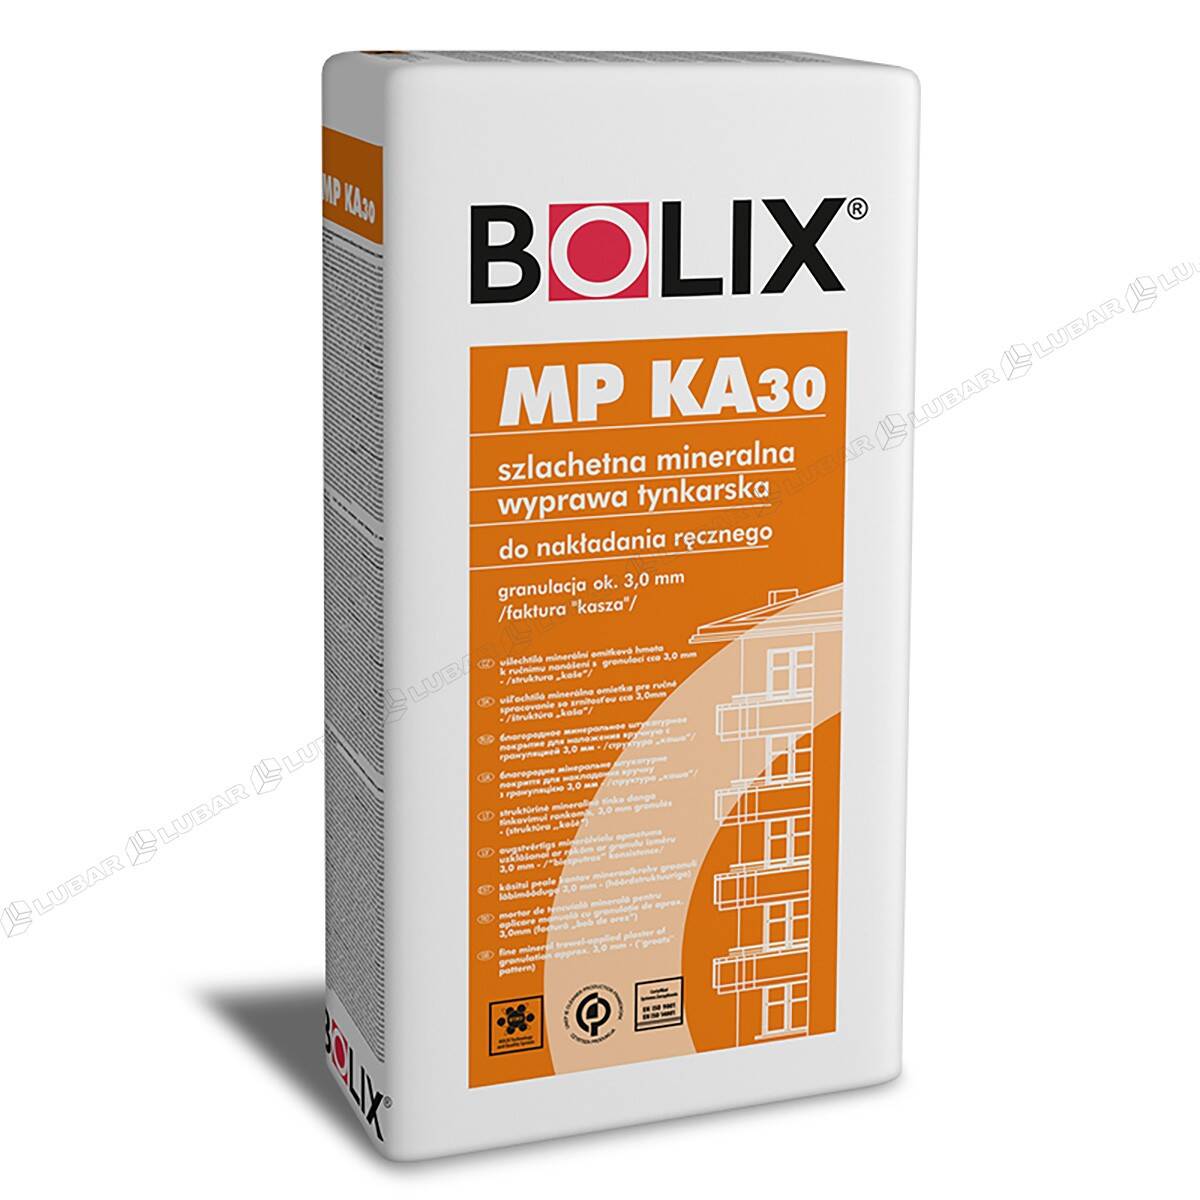 BOLIX MP KA 30 Tynk mineralny cienkowarstwowy baranek 25 kg